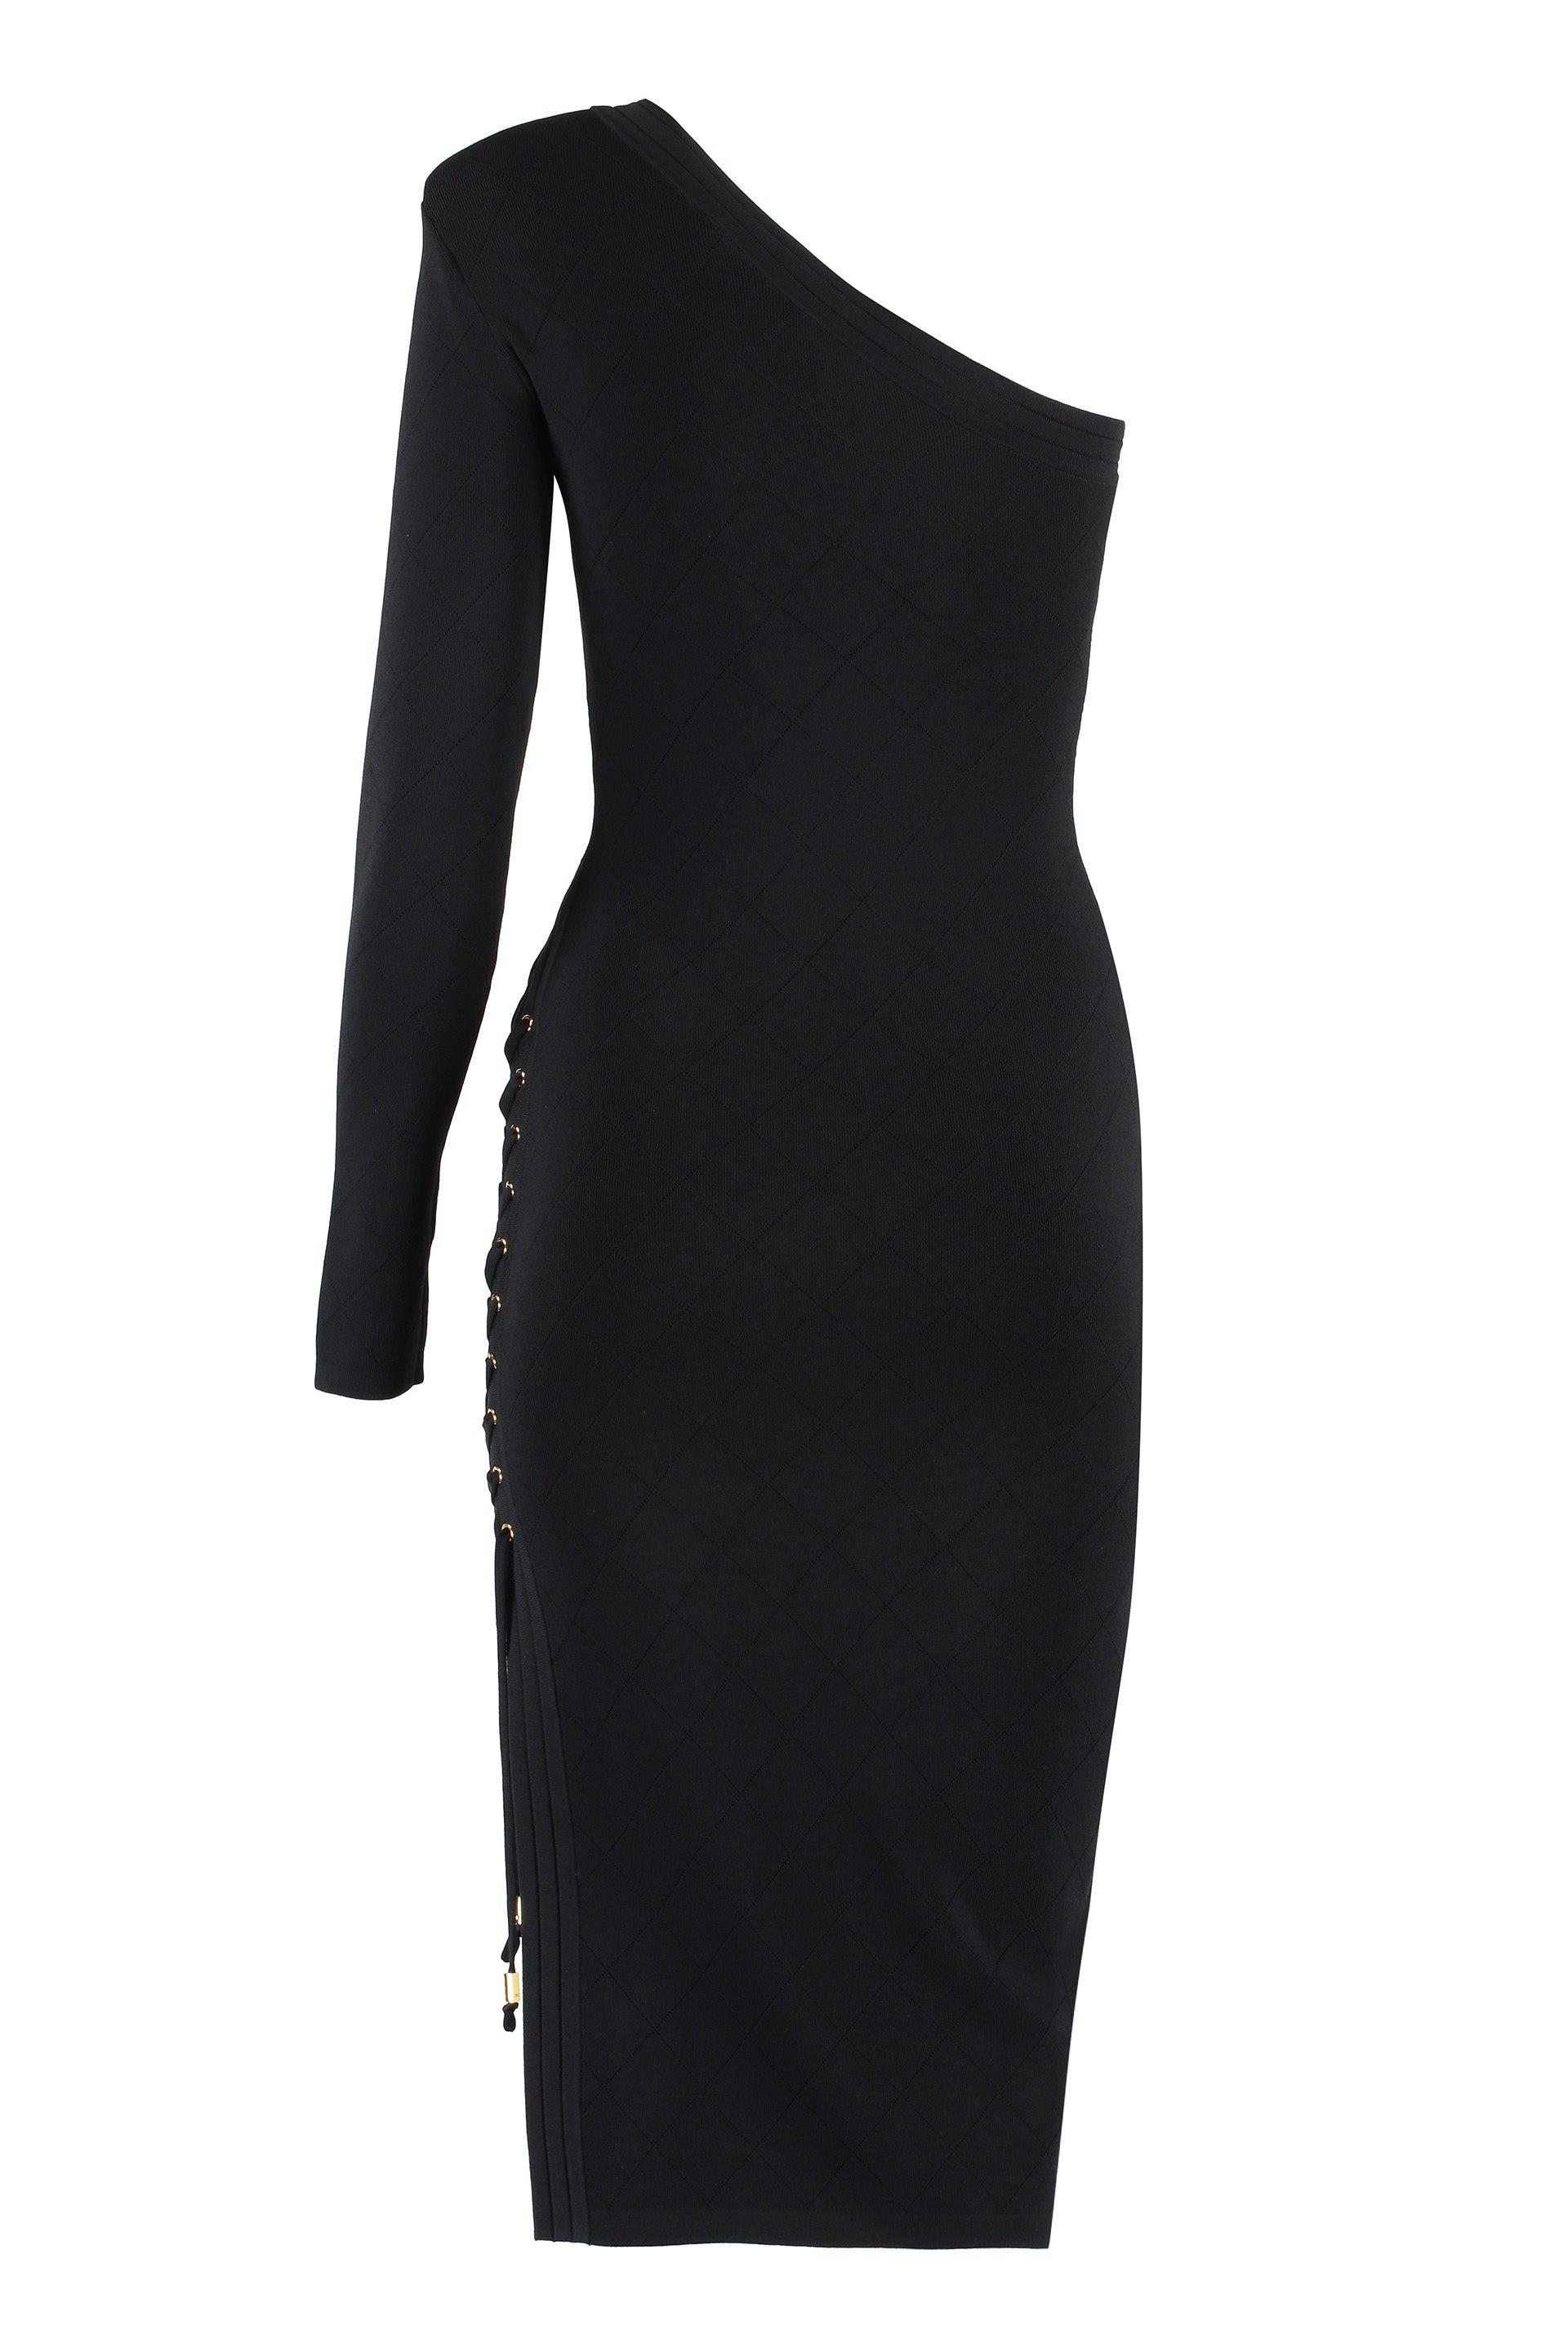 Elisabetta Franchi One Shoulder Dress in Black | Lyst